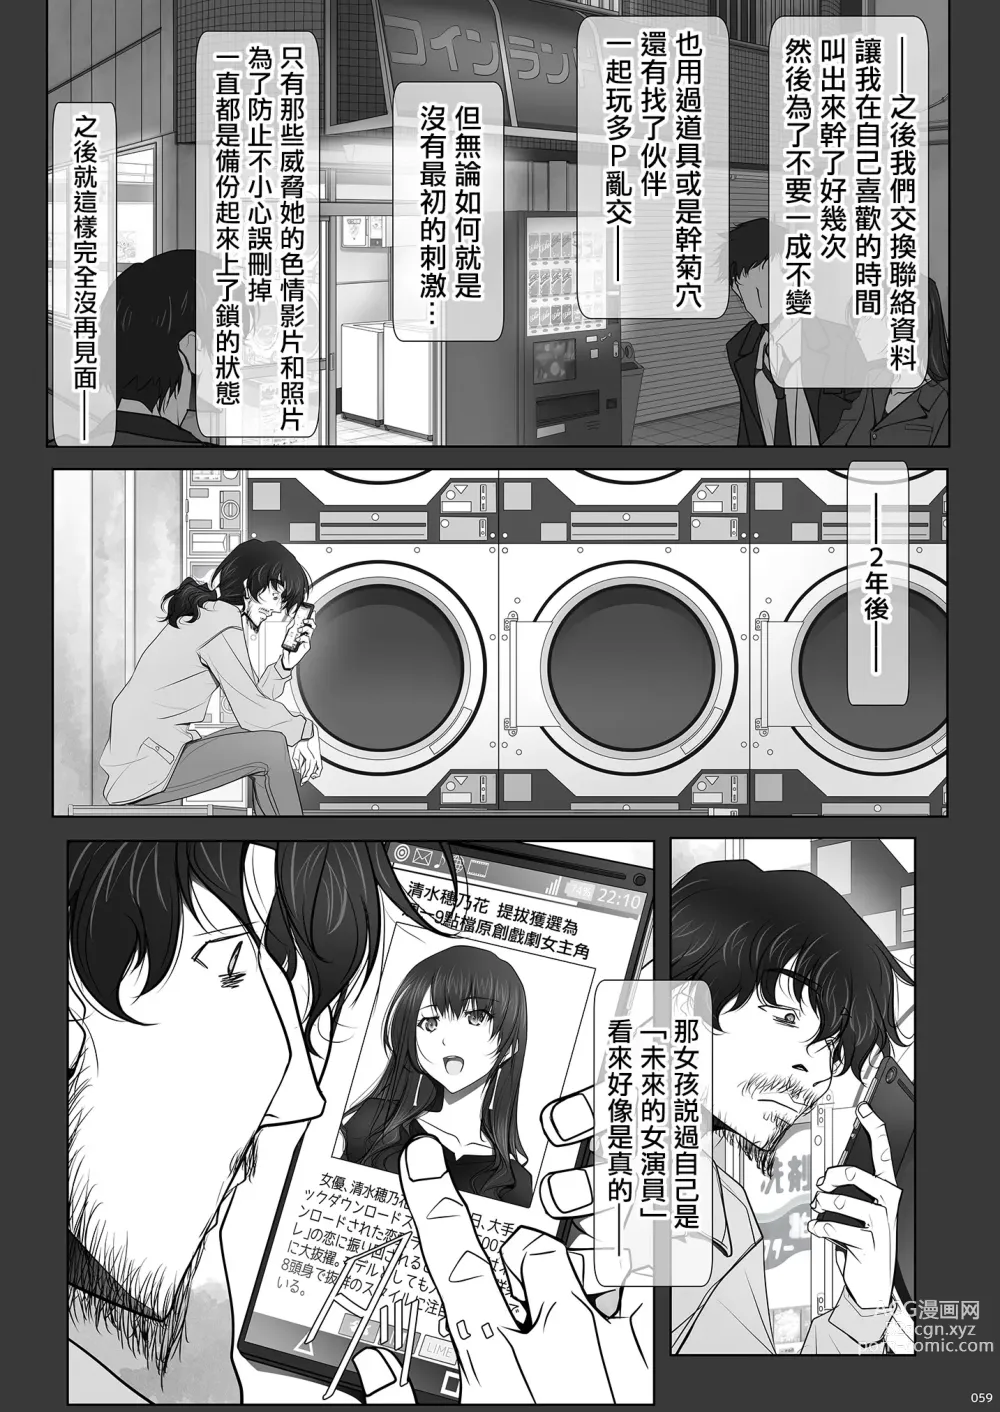 Page 59 of doujinshi 彼女がパンツを穿かない理由｜她不穿內褲的理由